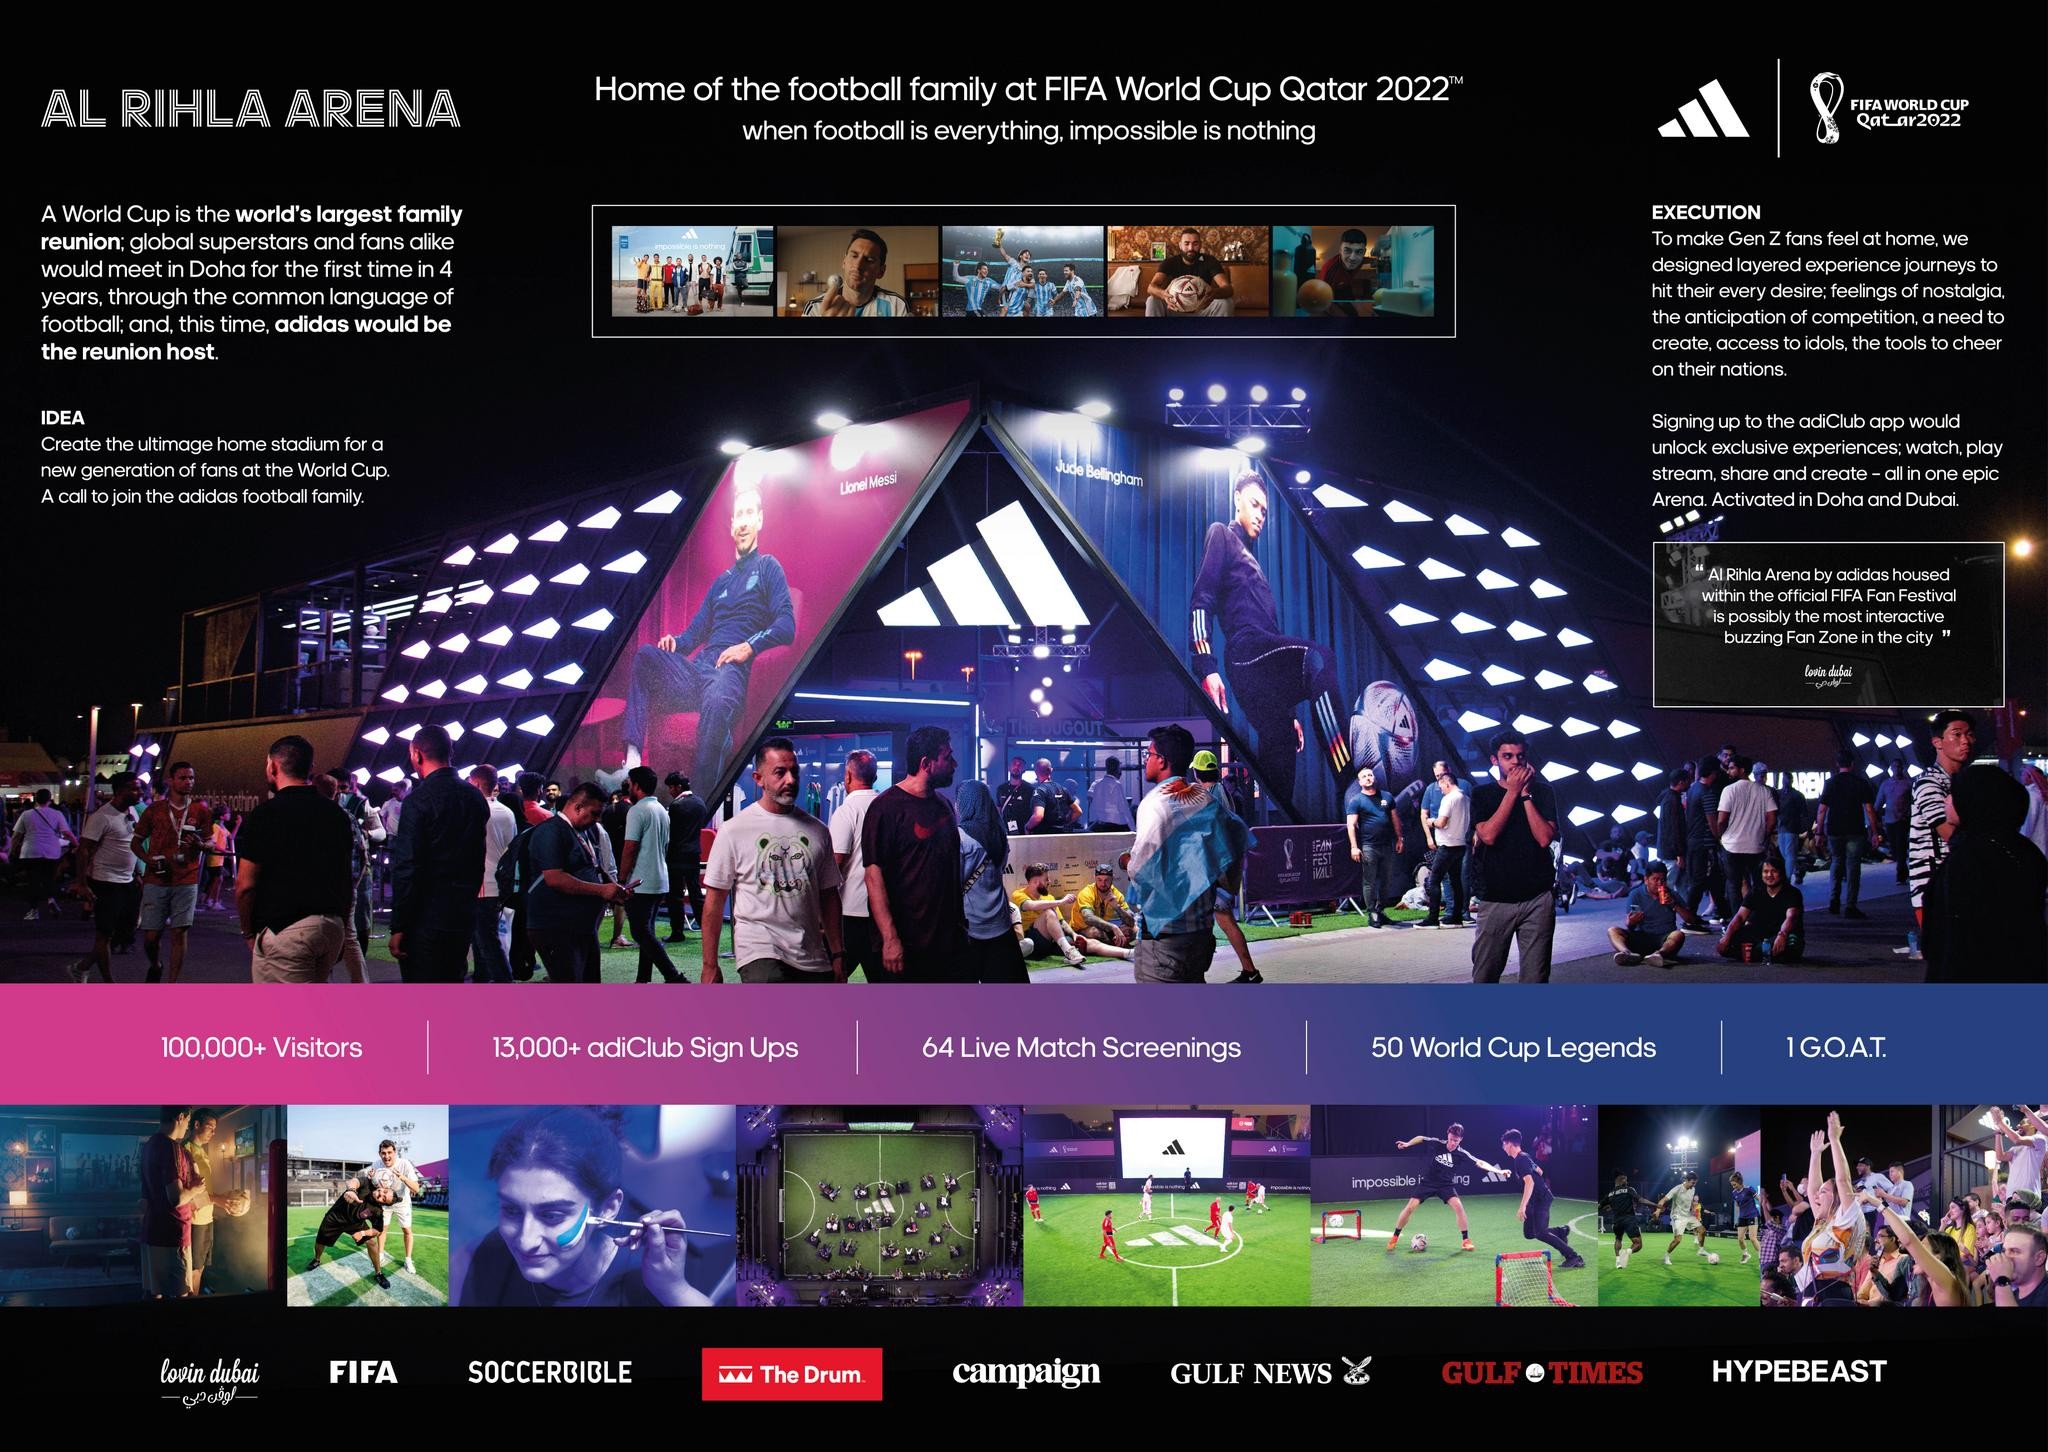 Al Rihla Arena: FIFA World Cup, Fan Zone Experience